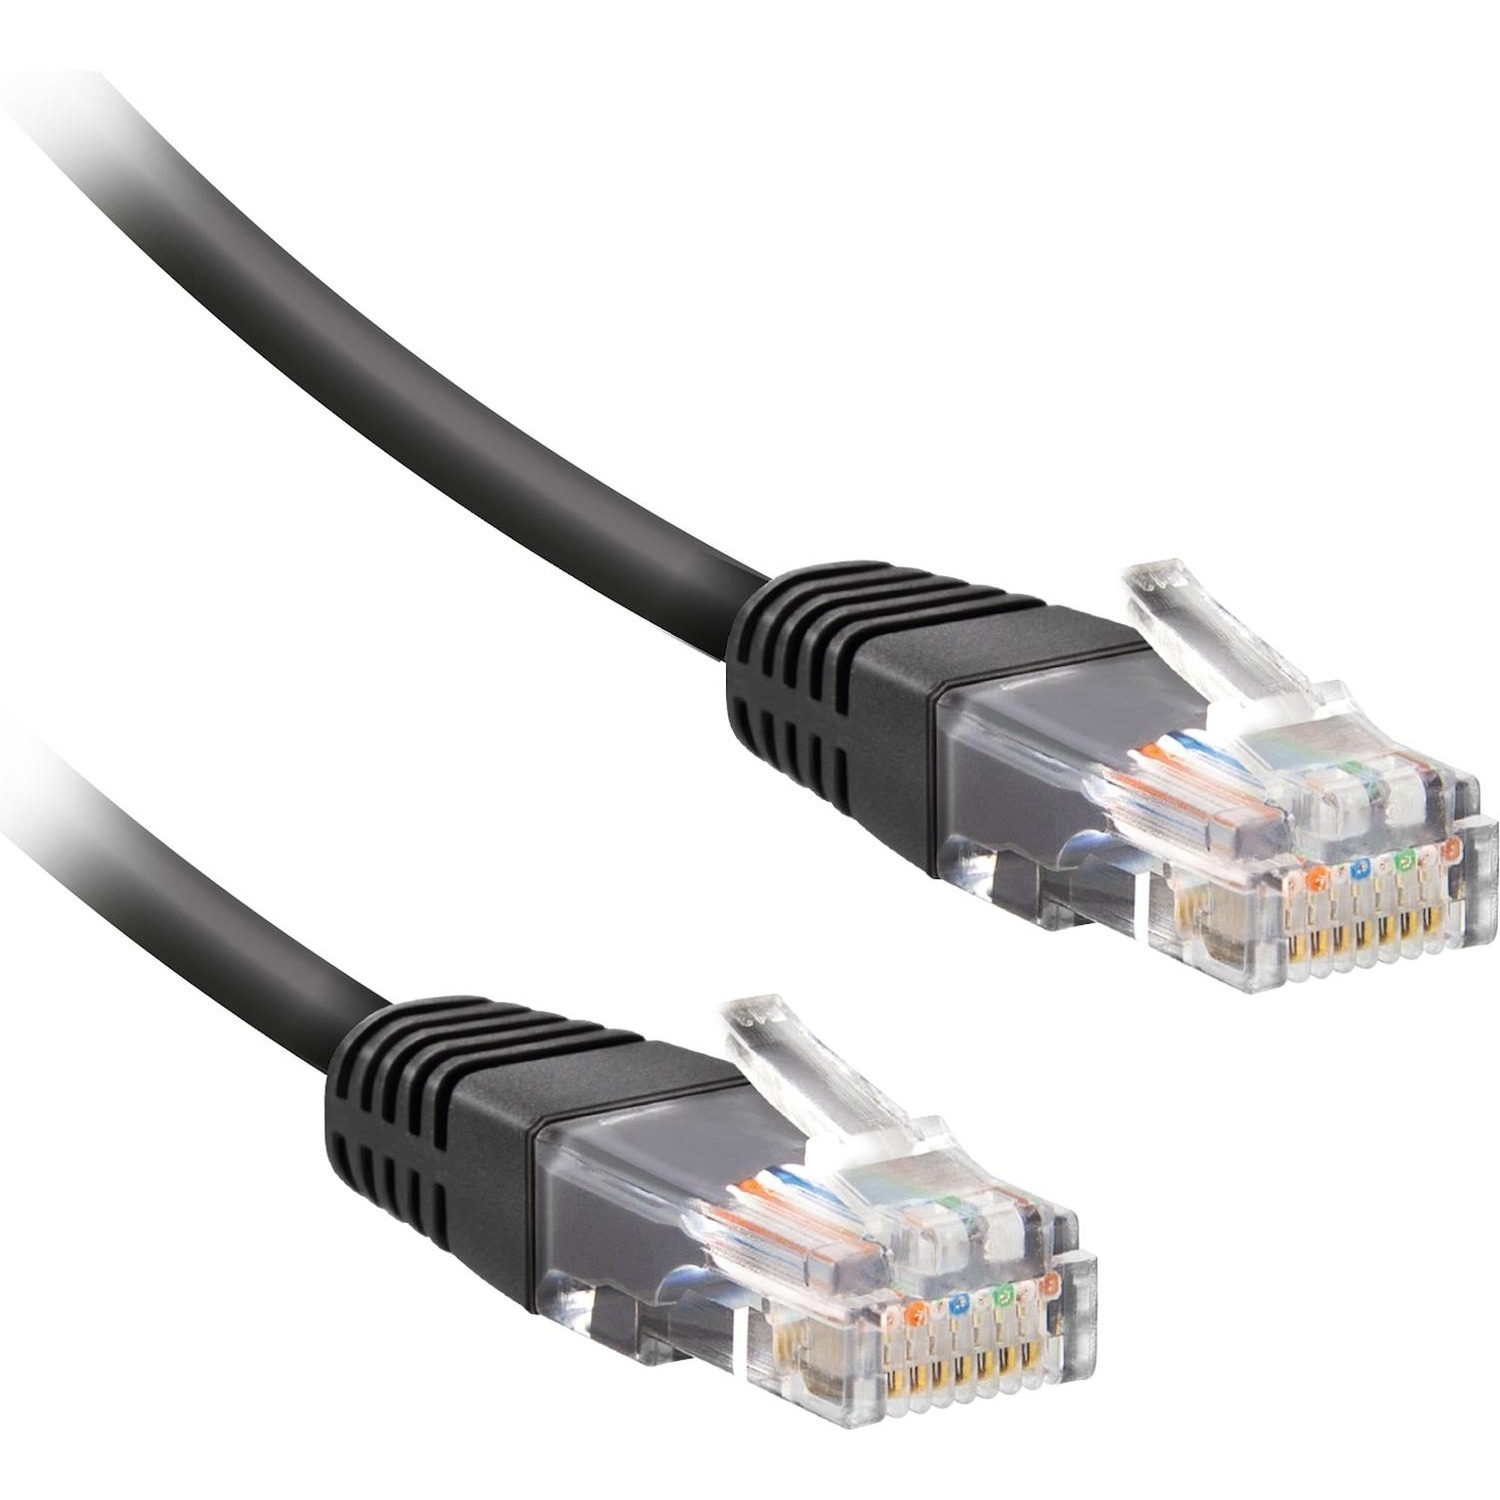 Immagine per Cavo di rete per PC Ekon UTP cat 7 colore grigio, connettori RJ45 dorati, lunghezza cavo 3 metri da DIMOStore